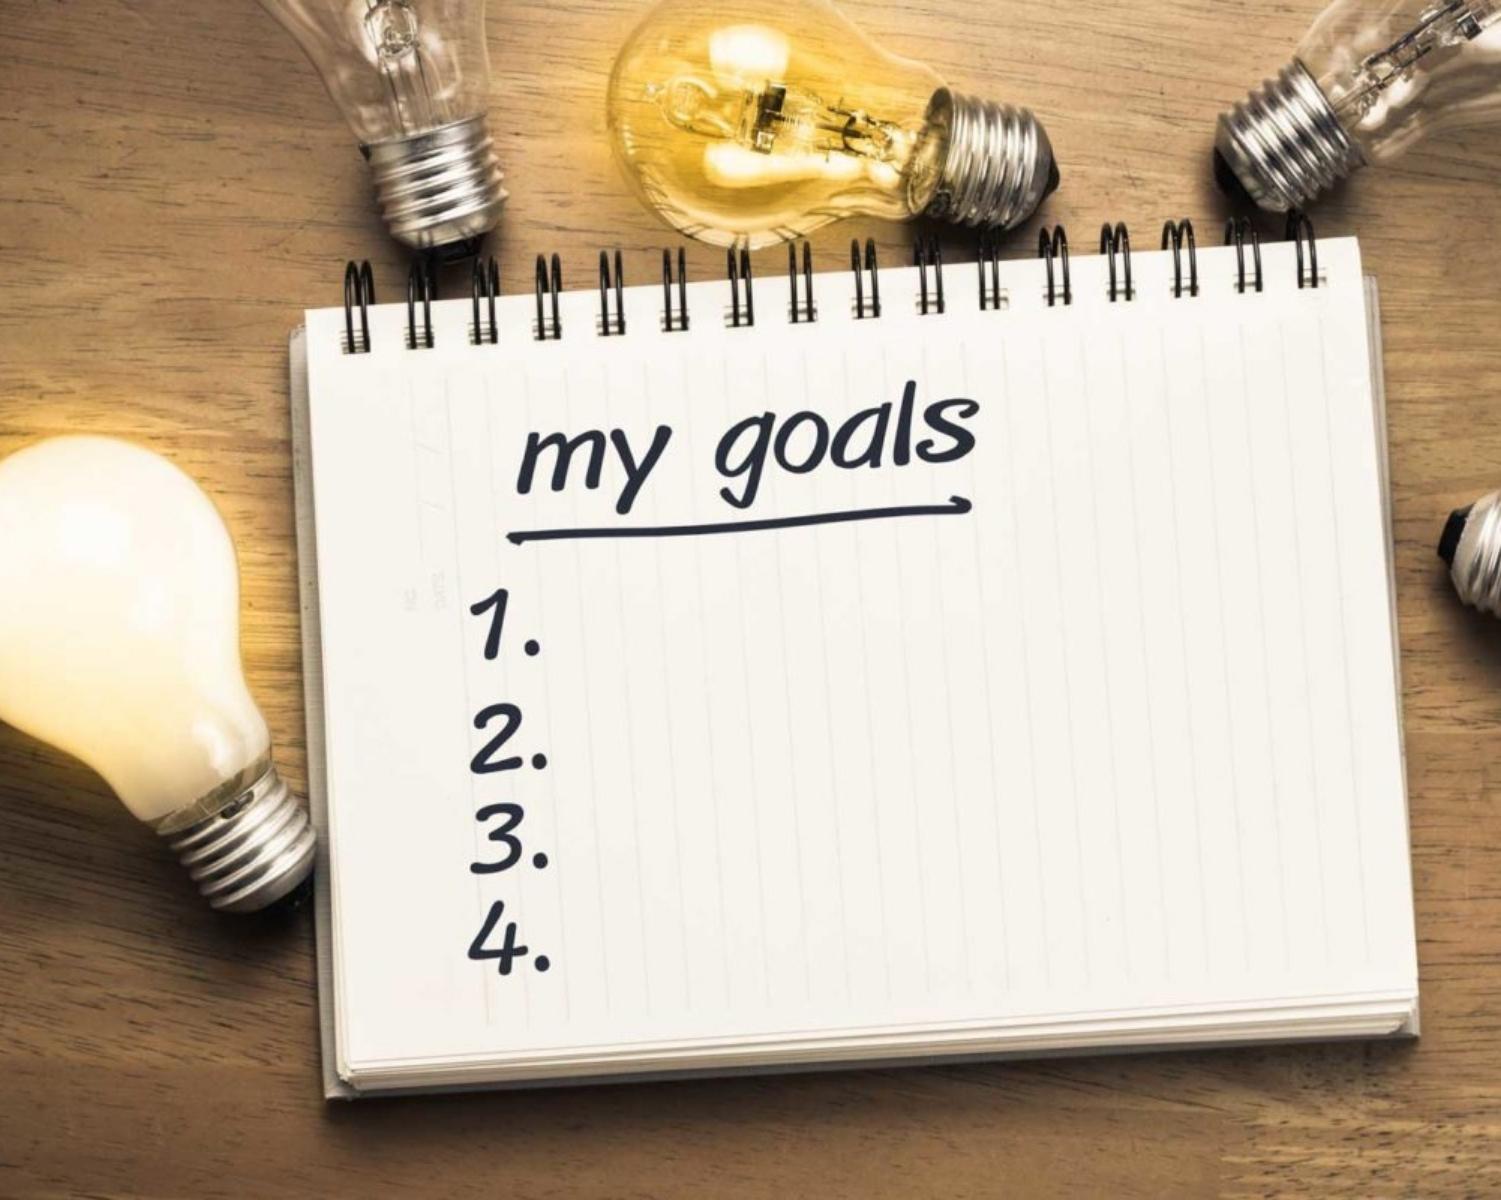 2.Set goals based on your definition